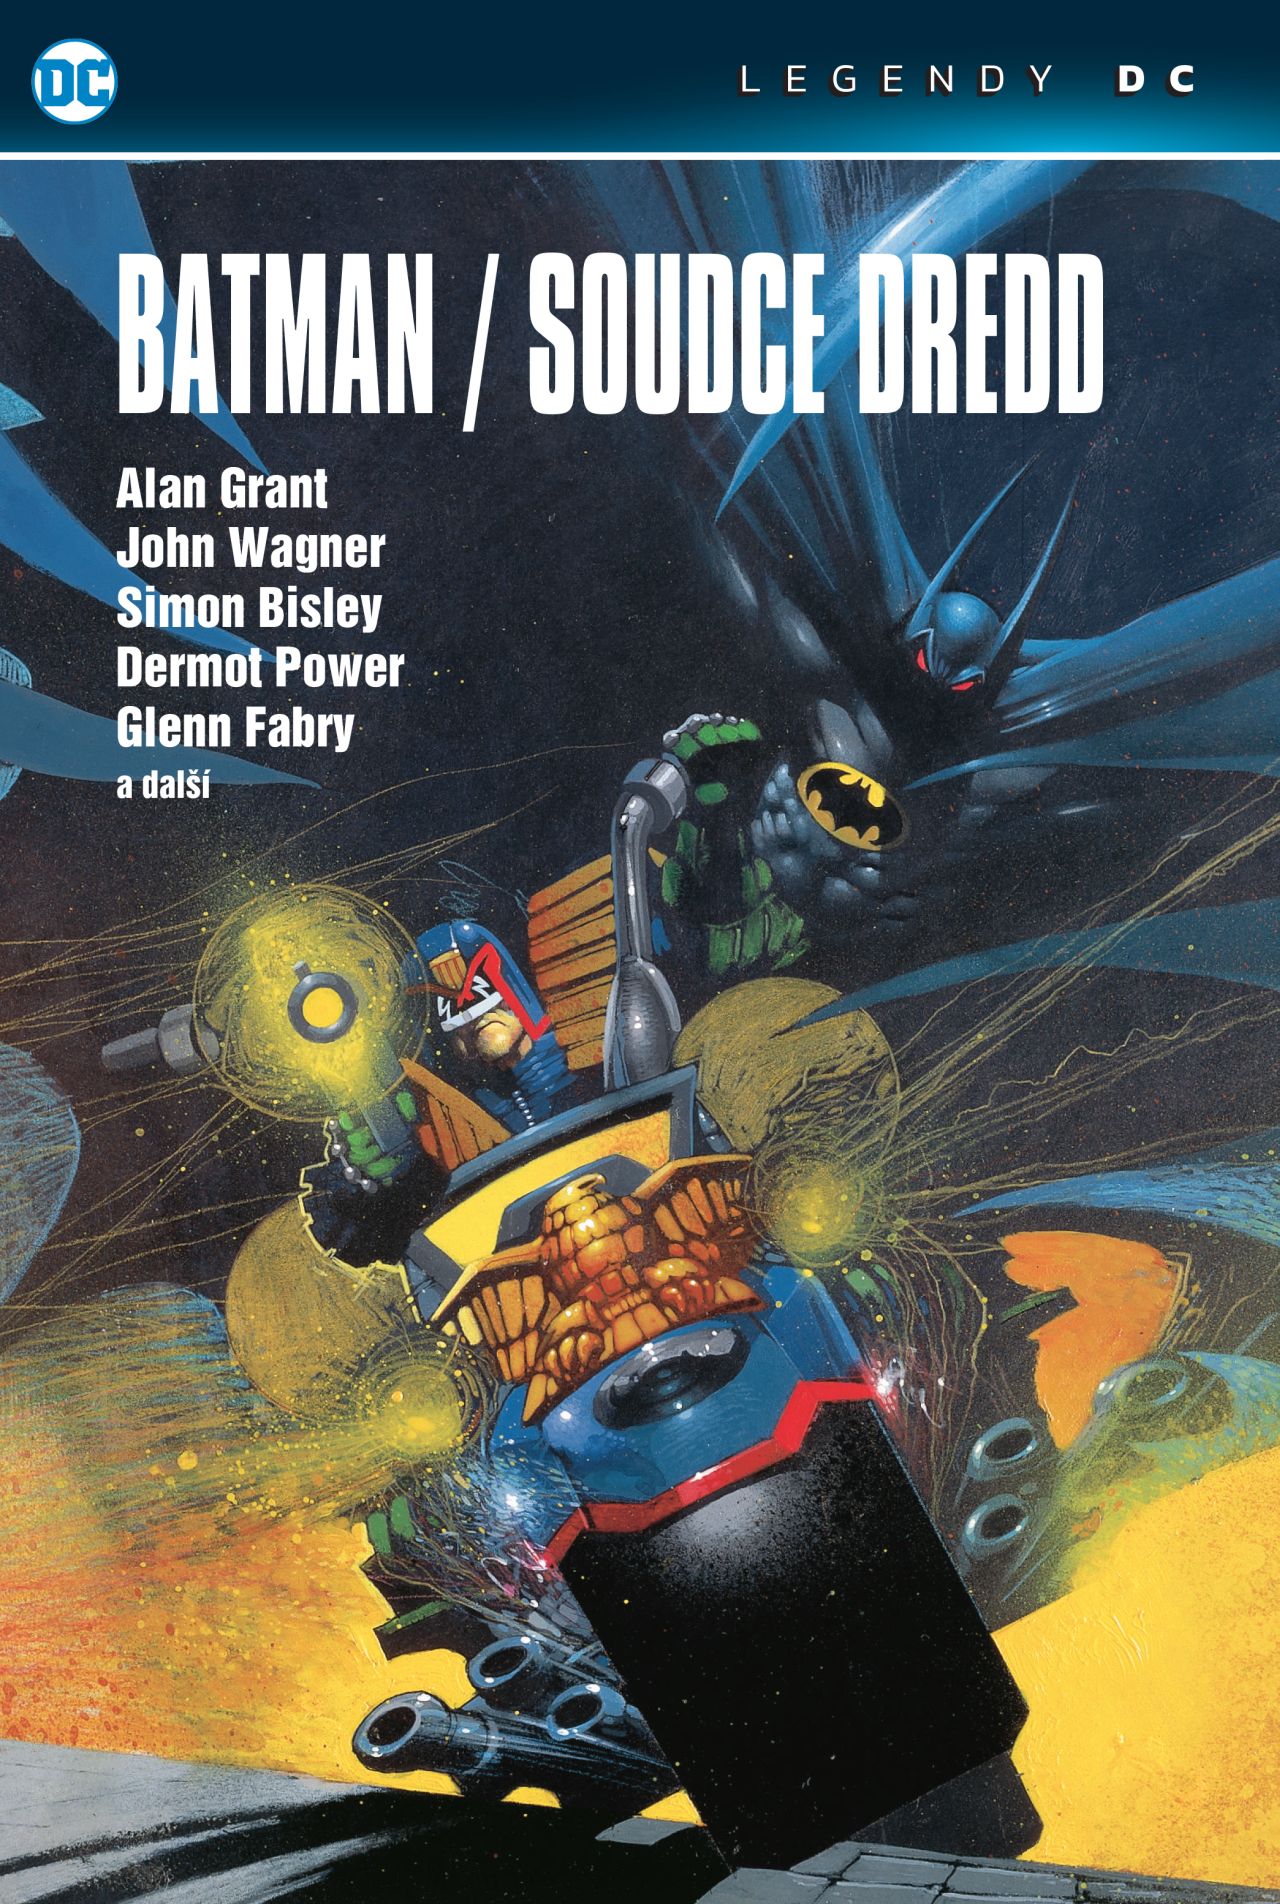 obrázek k novince - Batman / Soudce Dredd (Legendy DC)